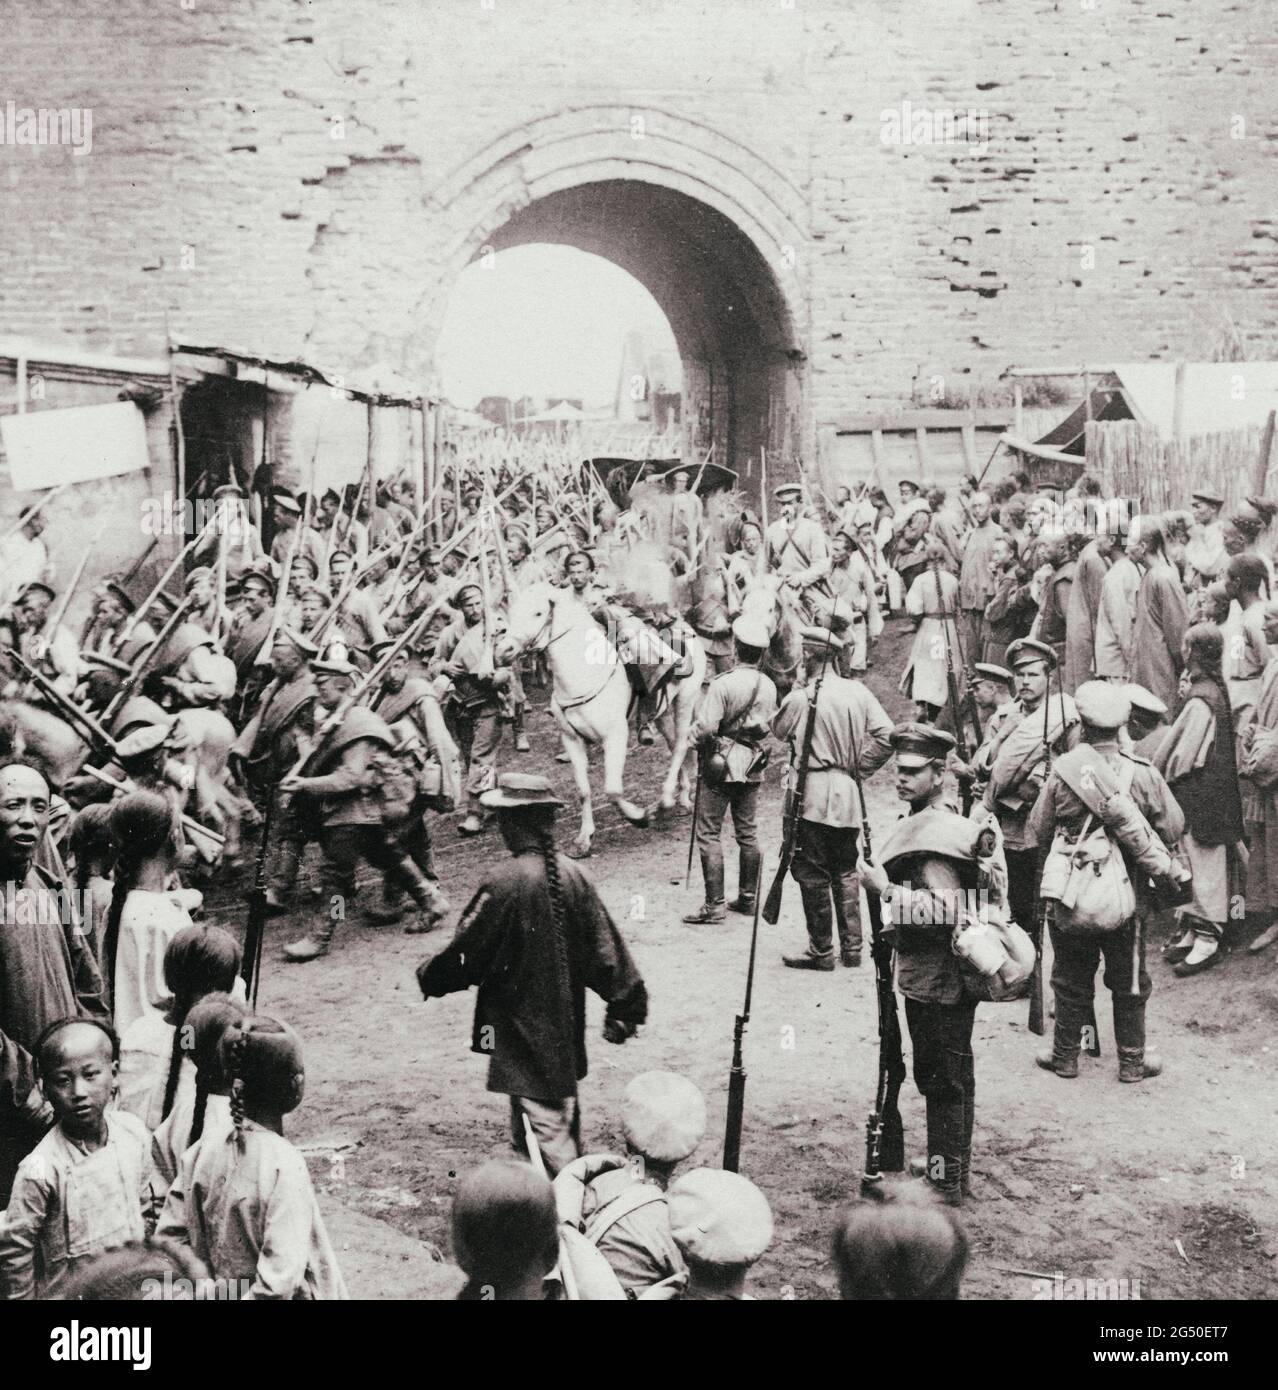 Soldaten des russischen Reiches, die durch die Tore von Mukden, Mandschurei. 1905. Russisch-Japanischer Krieg Stockfoto